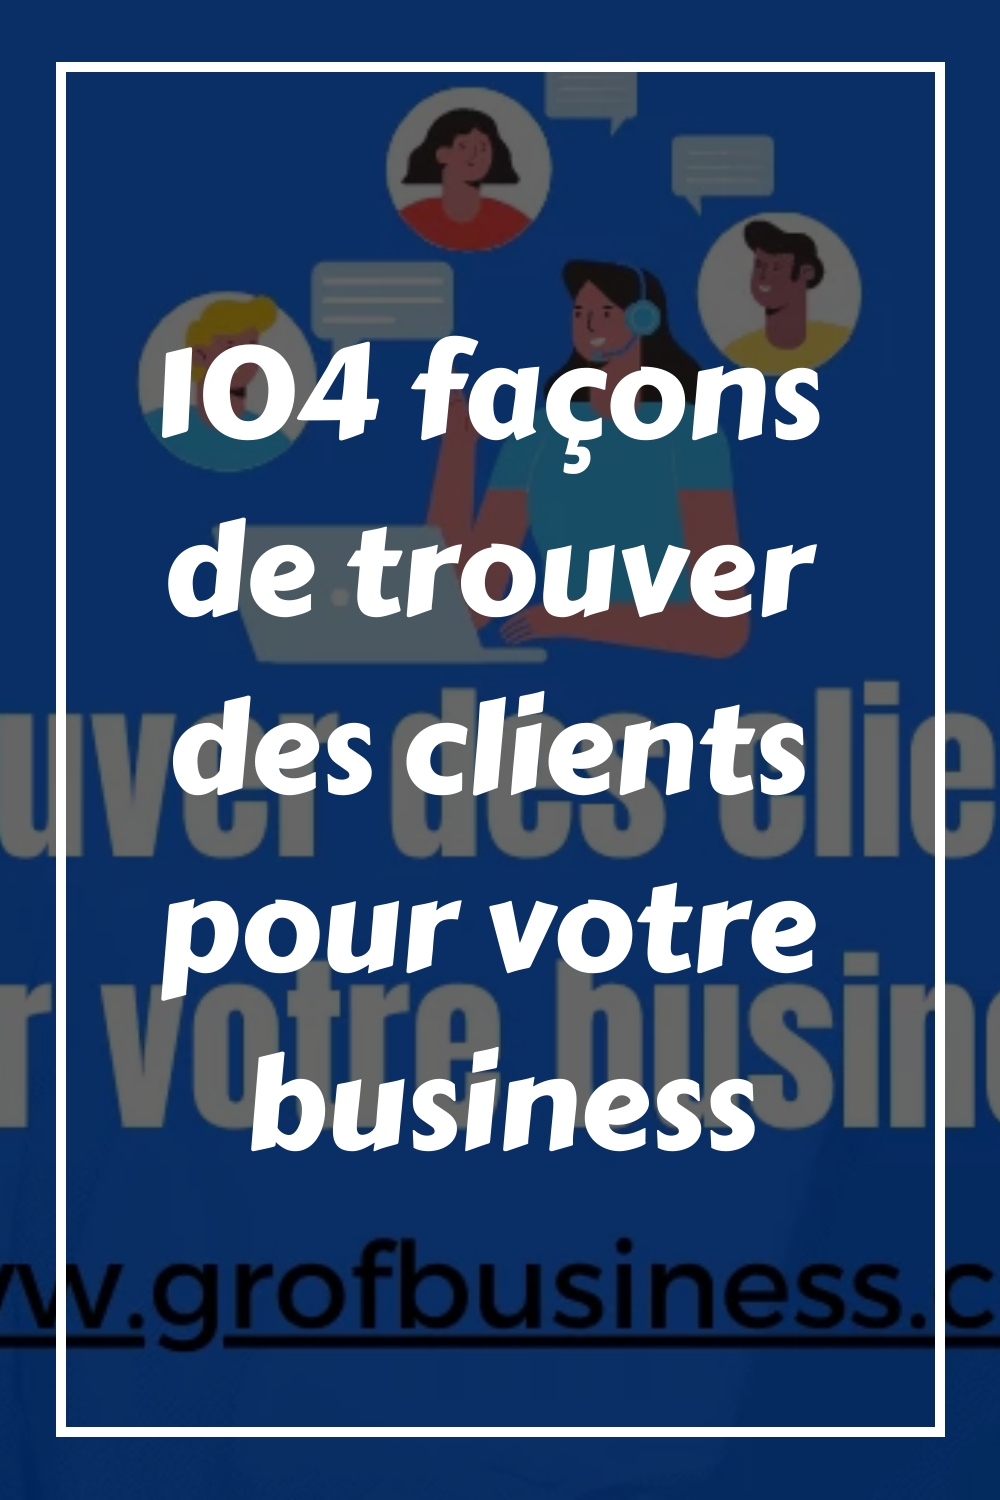 104 façons de trouver des clients pour votre business